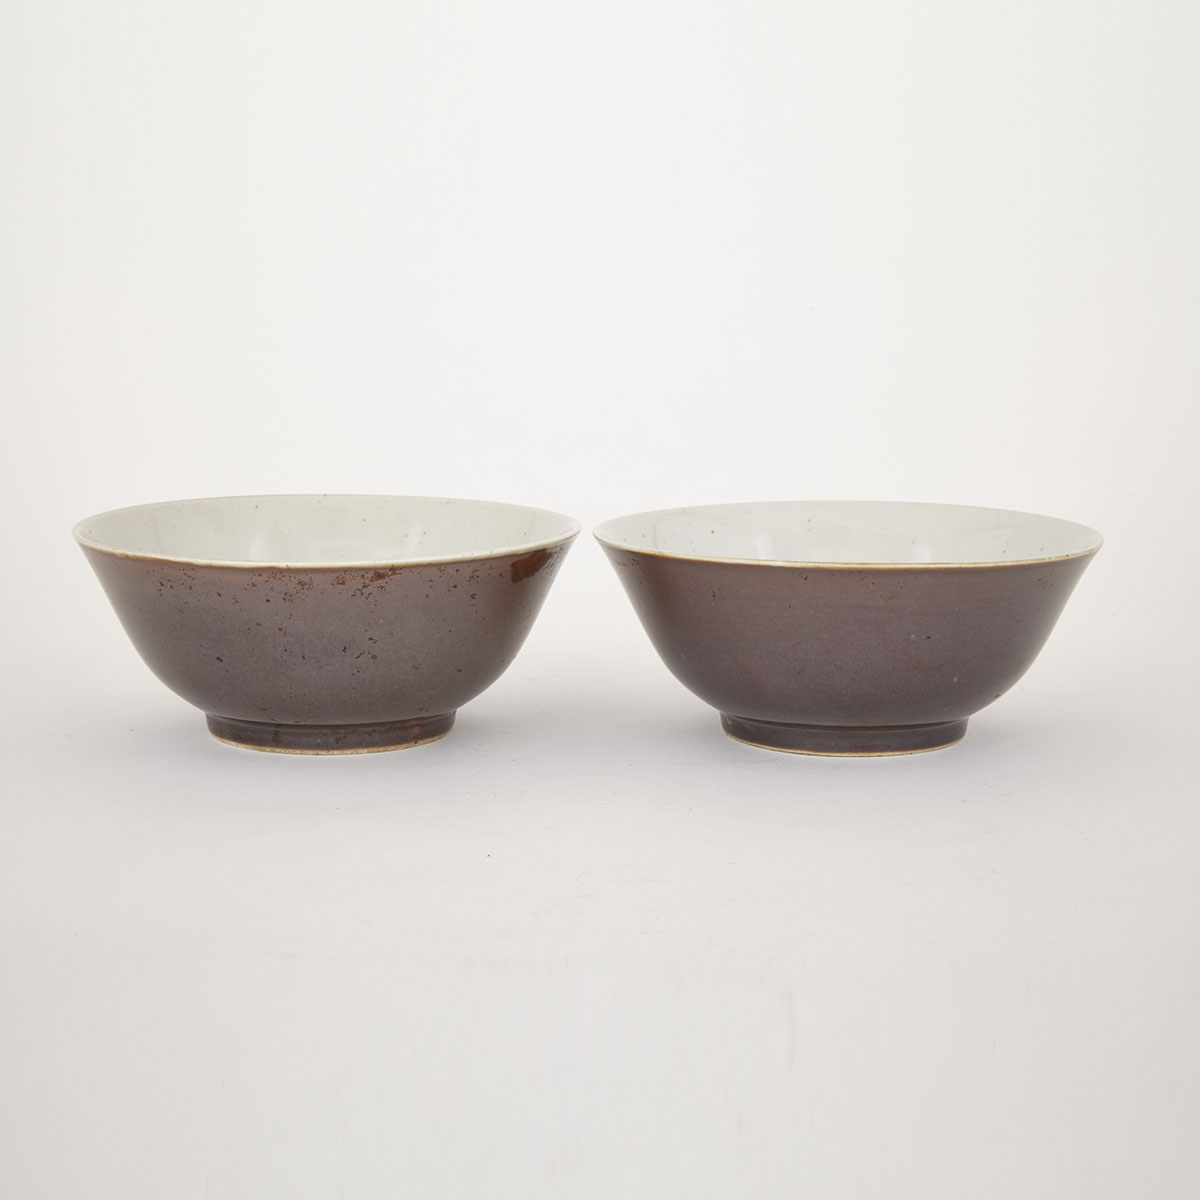 Pair of Cafe Au Lait Bowls, 19th/20th Century